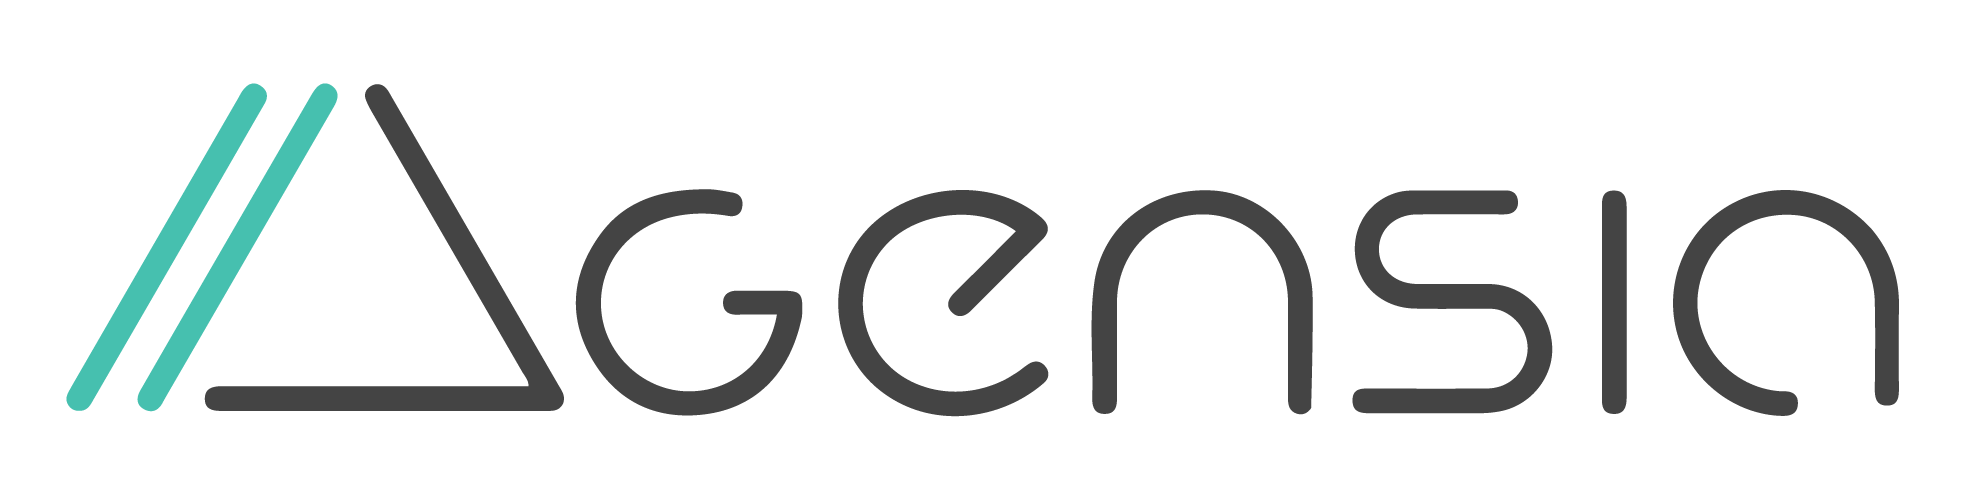 Logo Agensia